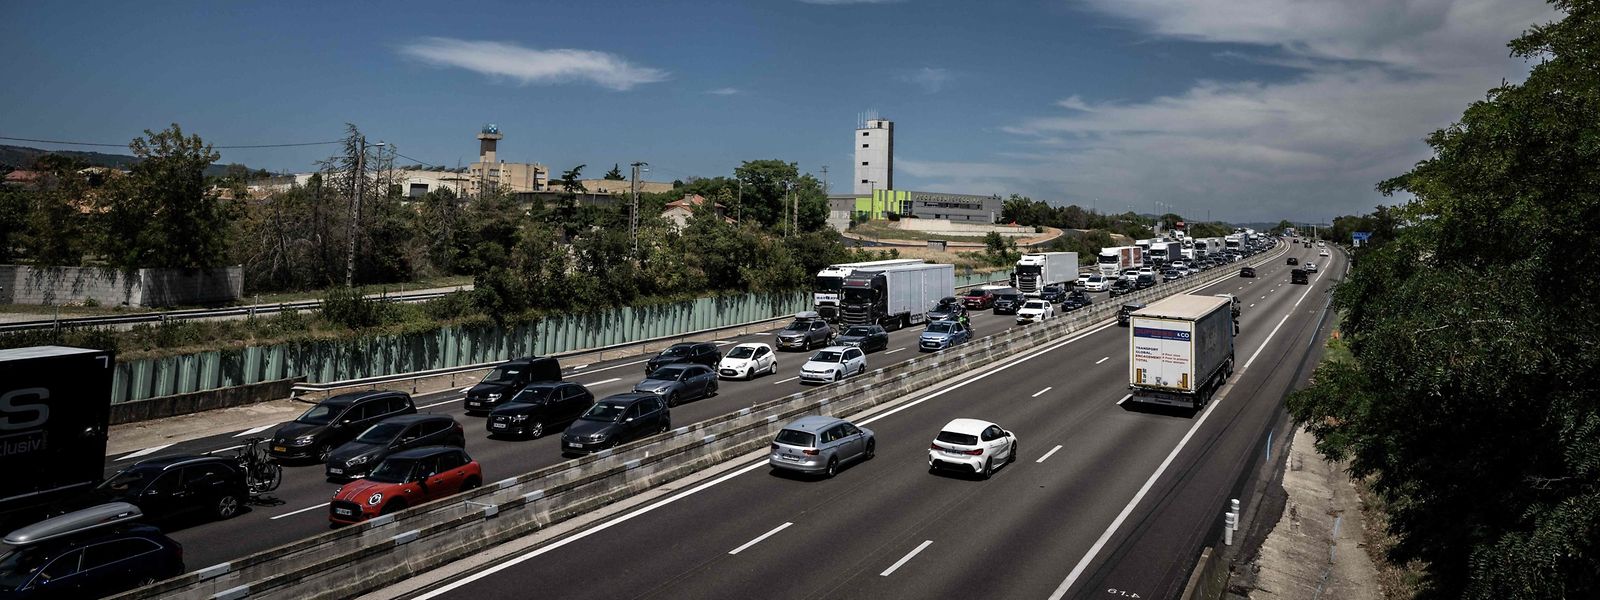 Malgré la hausse du prix des carburants, les routes menant aux stations balnéaires du sud de l'Europe ne devraient pas être moins engorgées cet été.